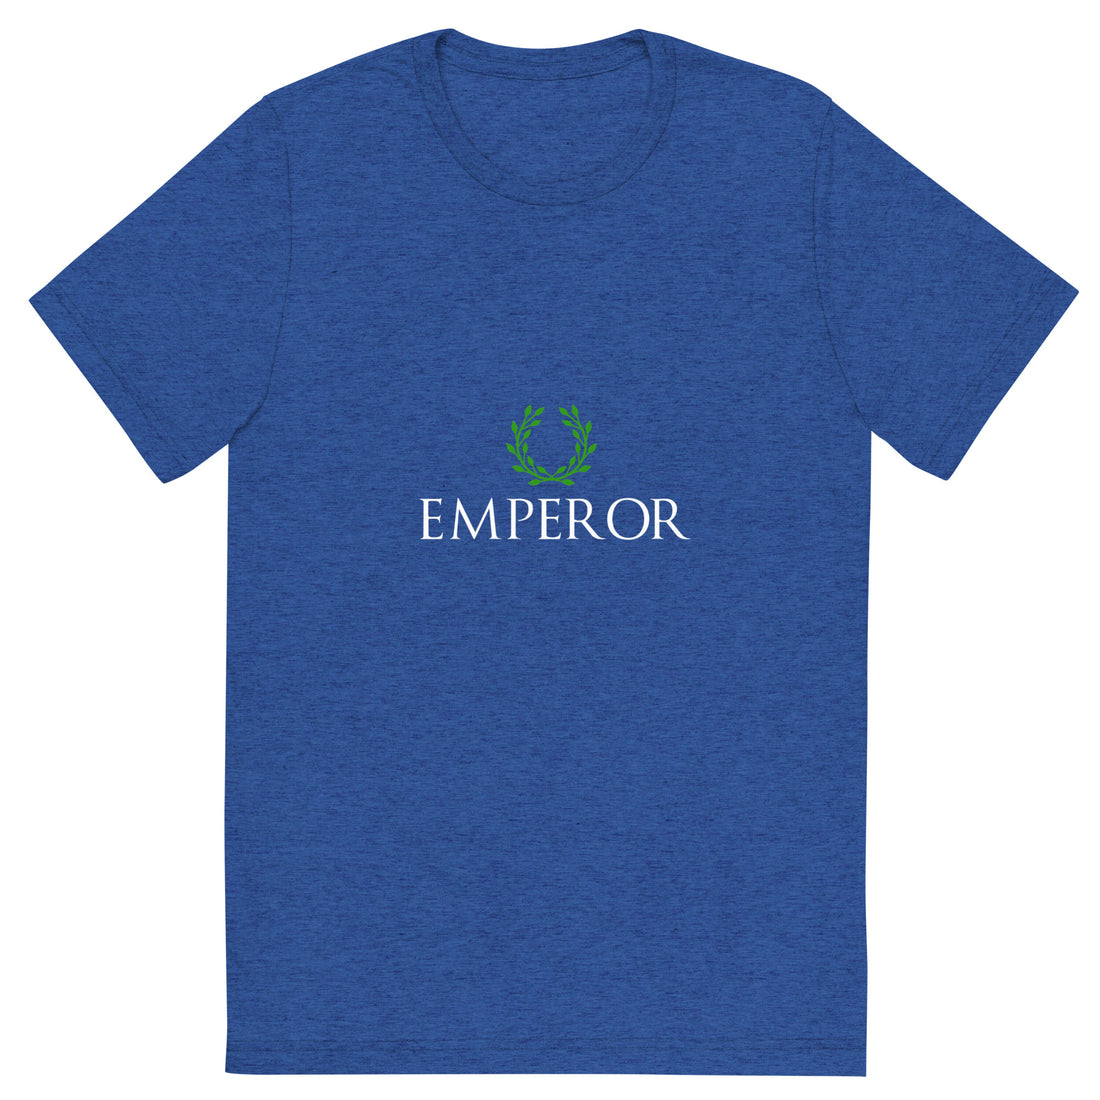 Blue Emperor short sleeve t-shirt Green crown variation - Emperor